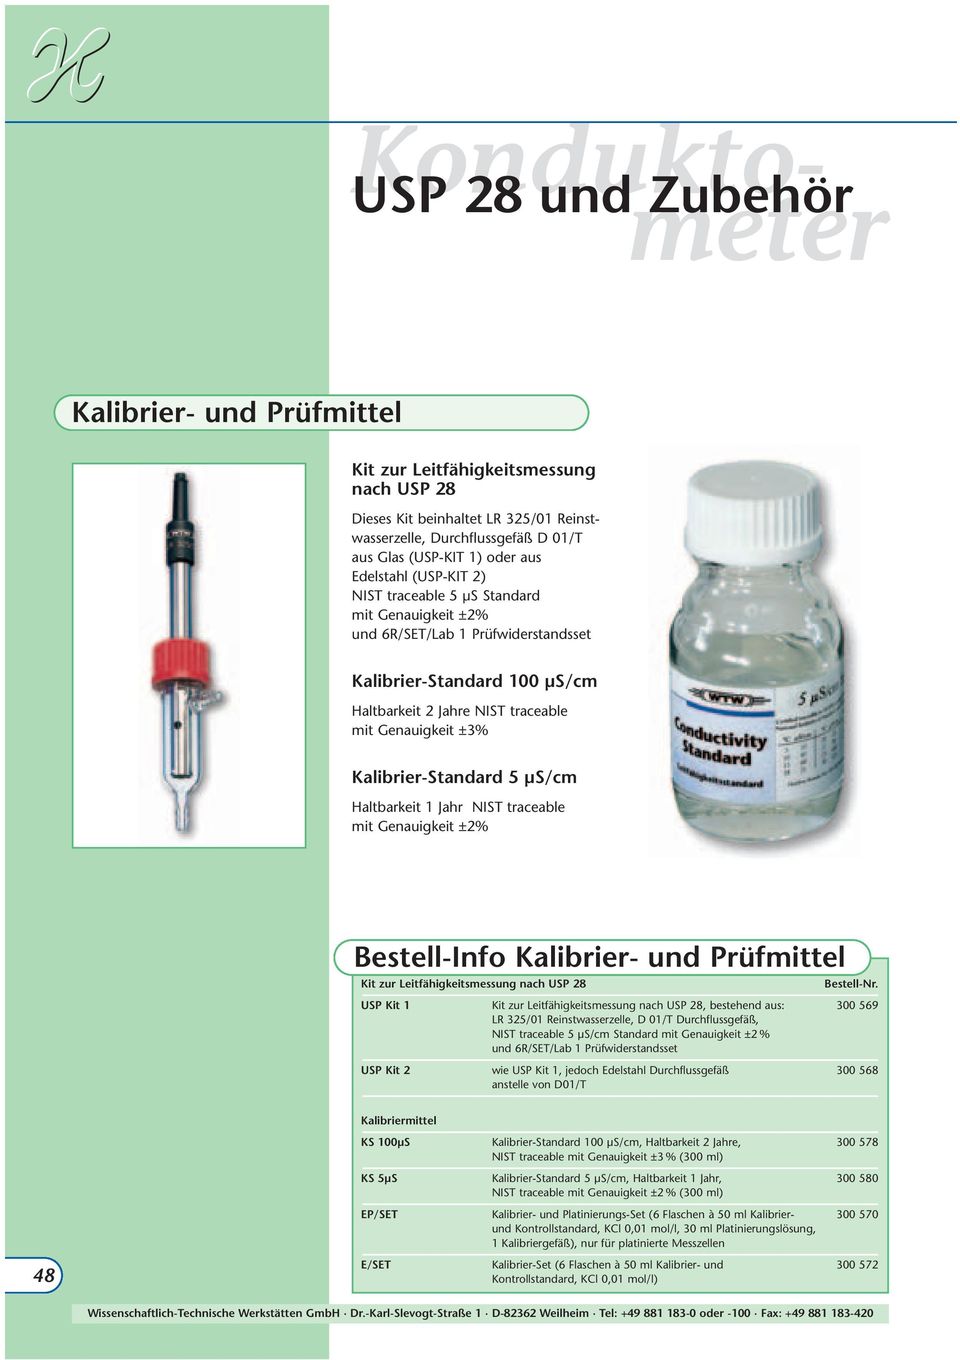 Kalibrier-Standard 5 µs/cm Haltbarkeit 1 Jahr NIST traceable mit Genauigkeit ±2% Bestell-Info Kalibrier- und Prüfmittel Kit zur Leitfähigkeitsmessung nach USP 28 USP Kit 1 Kit zur